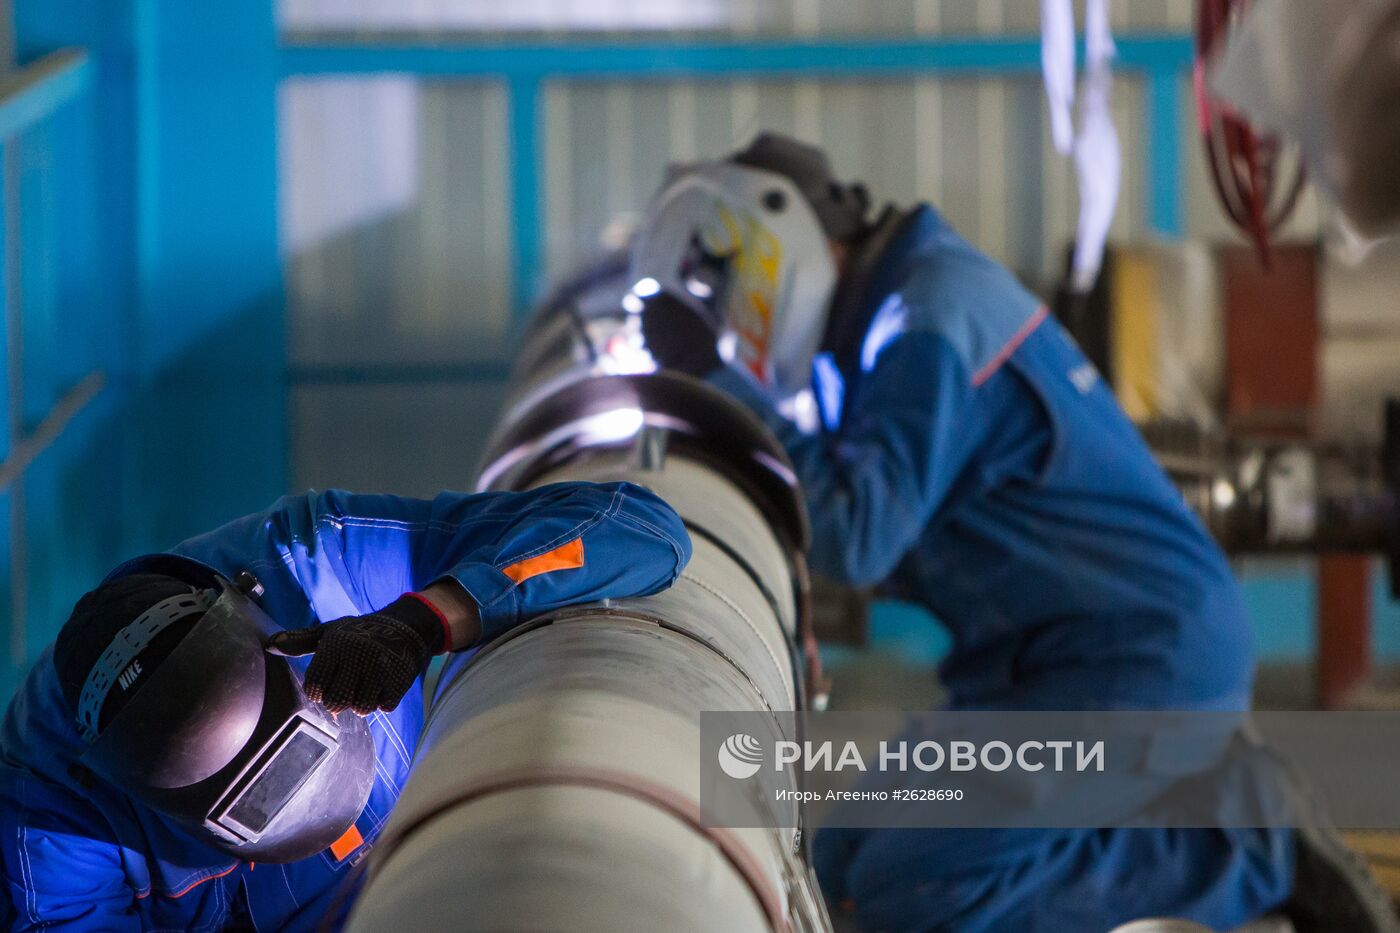 Монтаж оборудования на космодроме "Восточный" в Амурской области